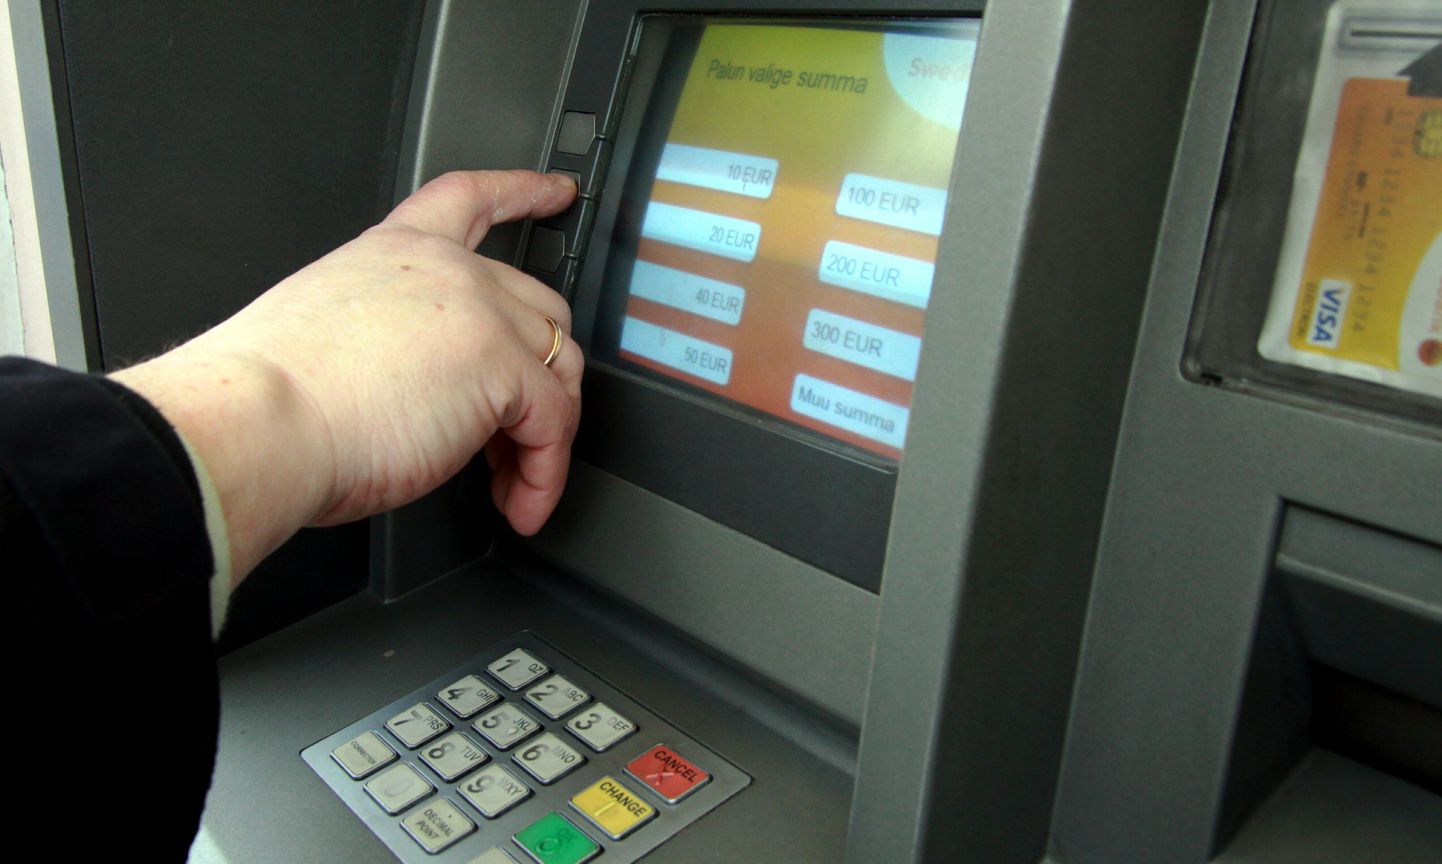 Swedbanki rahaautomaat.